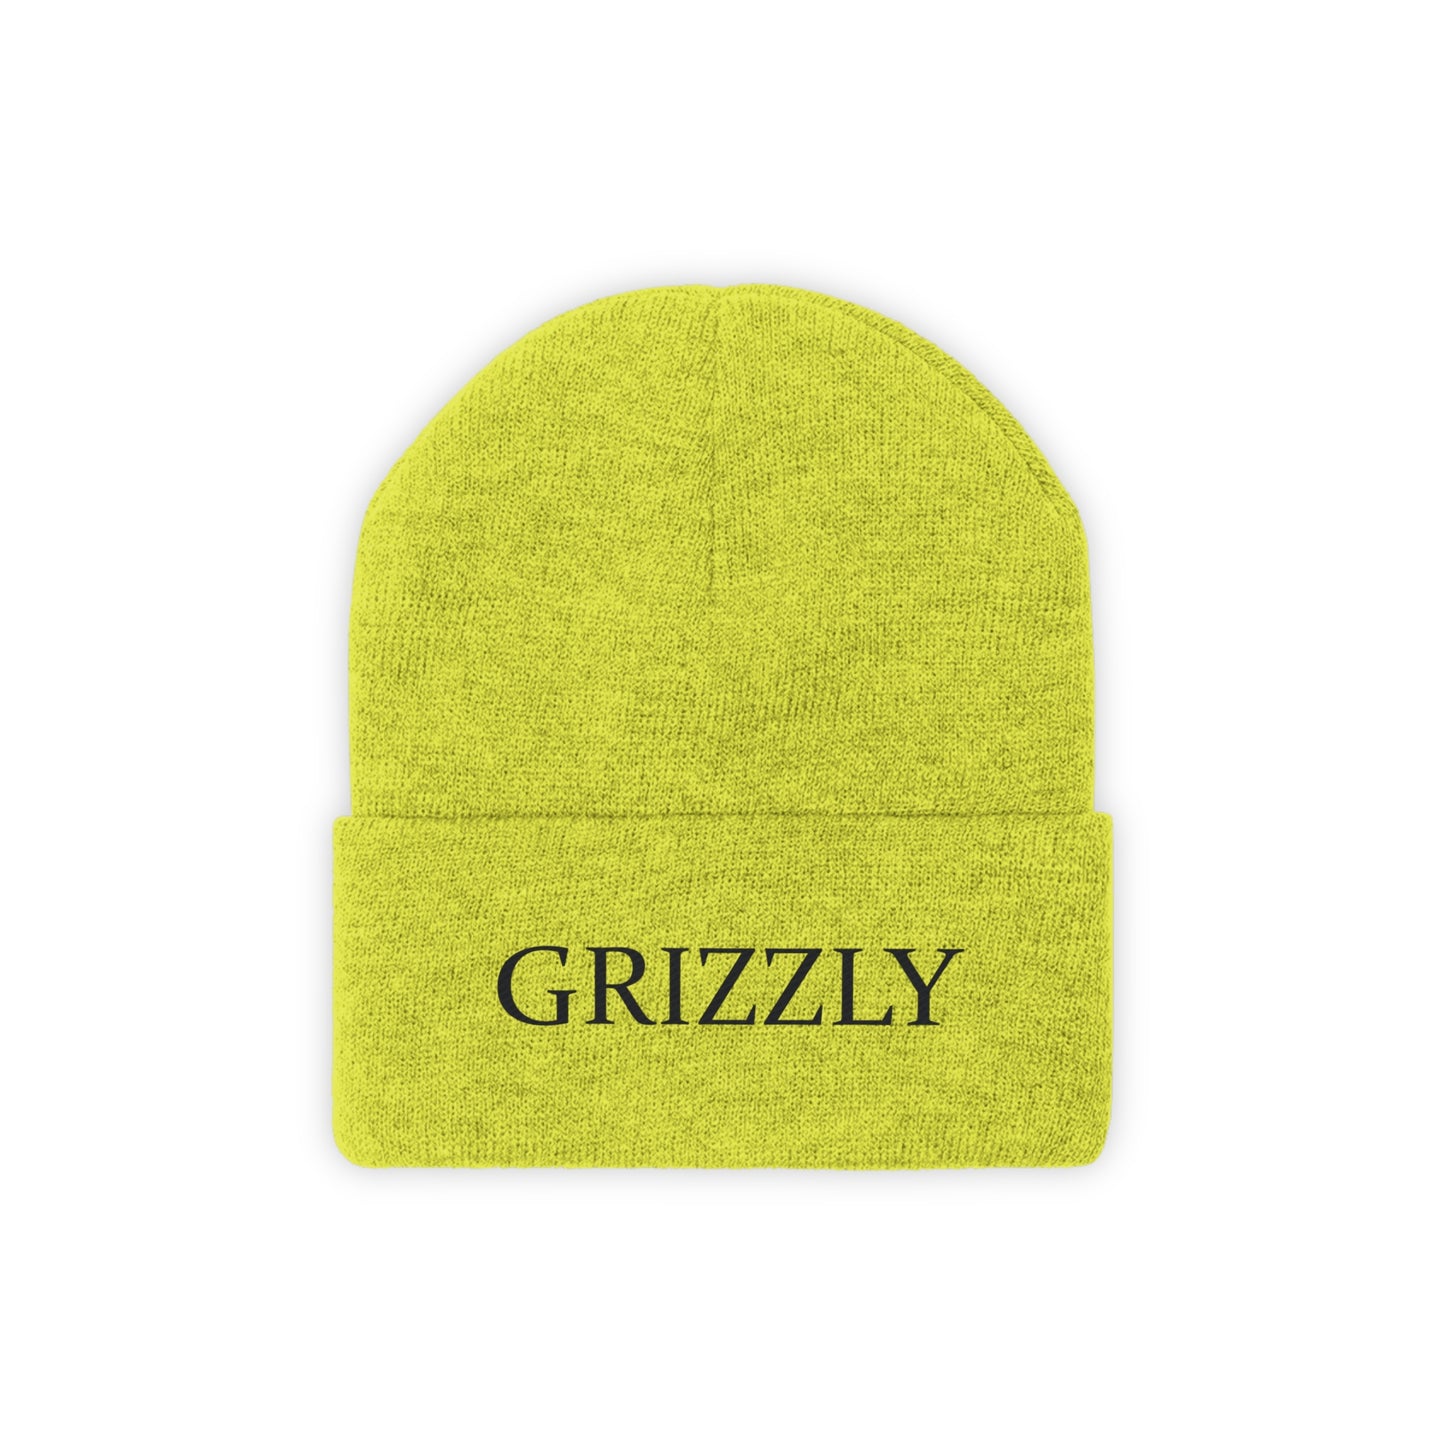 GGC Grizzly Knit Beanie - White/Black Font